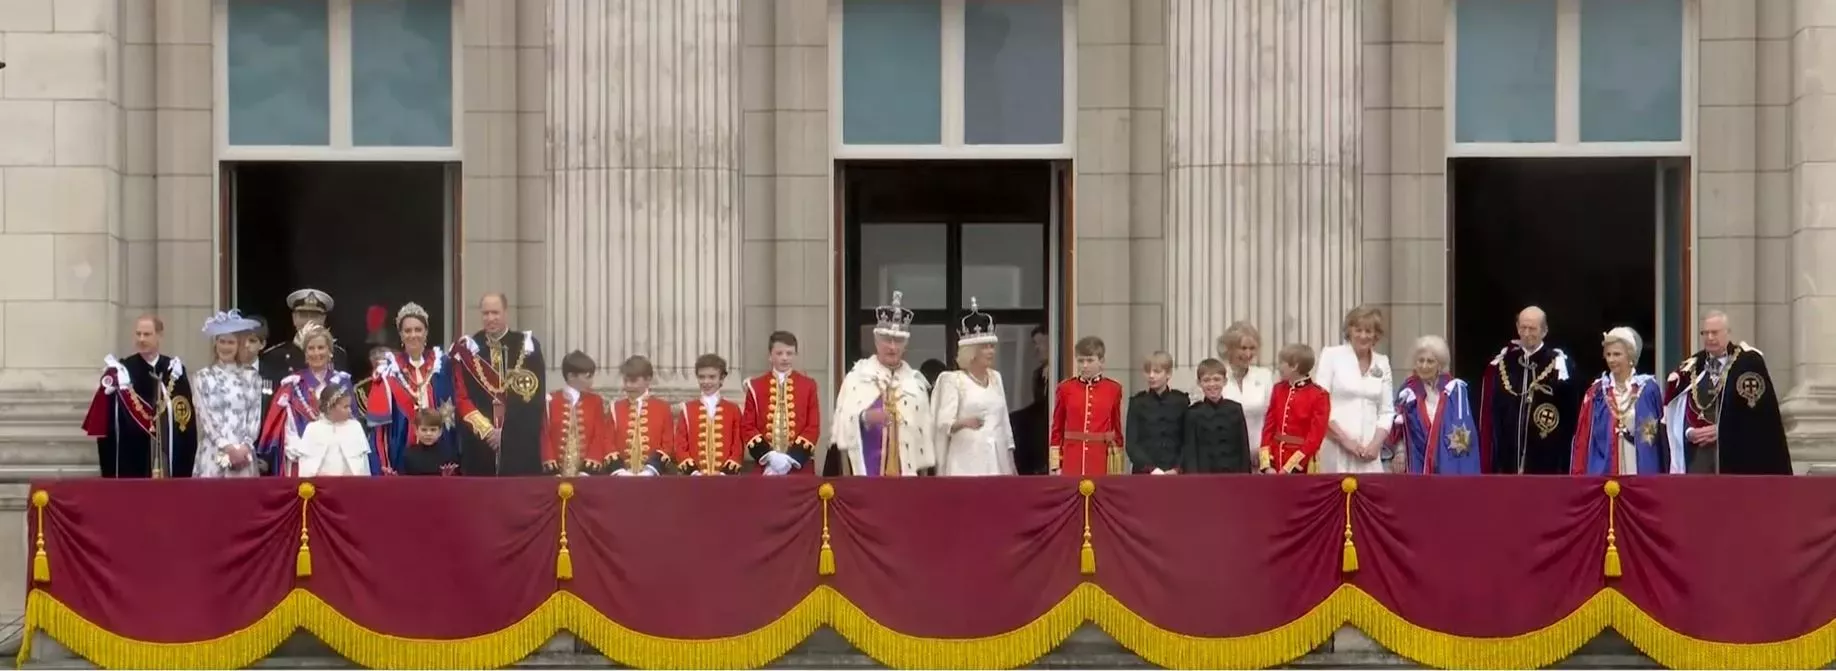 Královská rodina na balkóně Buckinghamského paláce